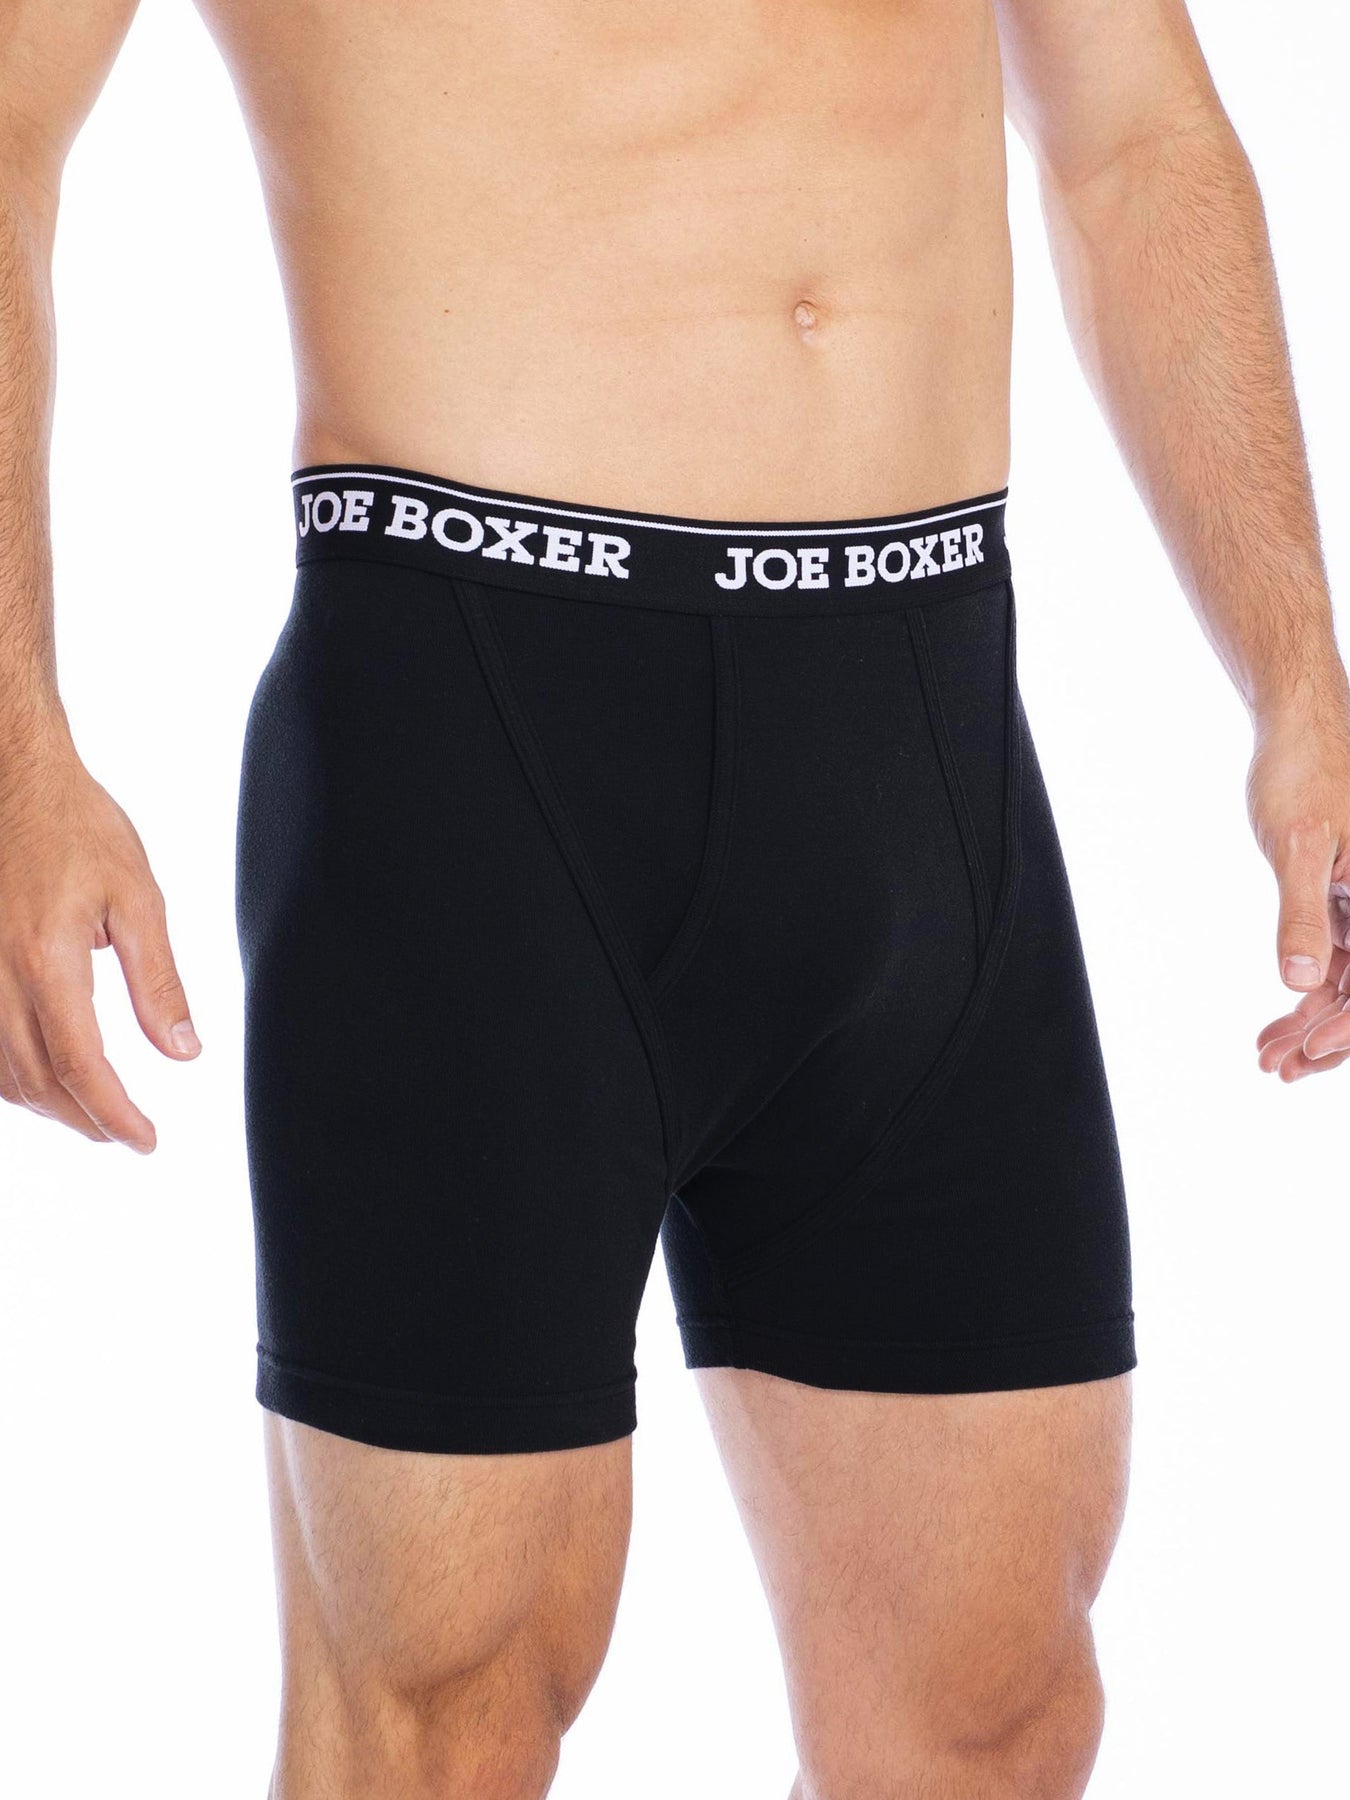 Men's Low Rise Contour Pouch Short Boxer Briefs Underwear